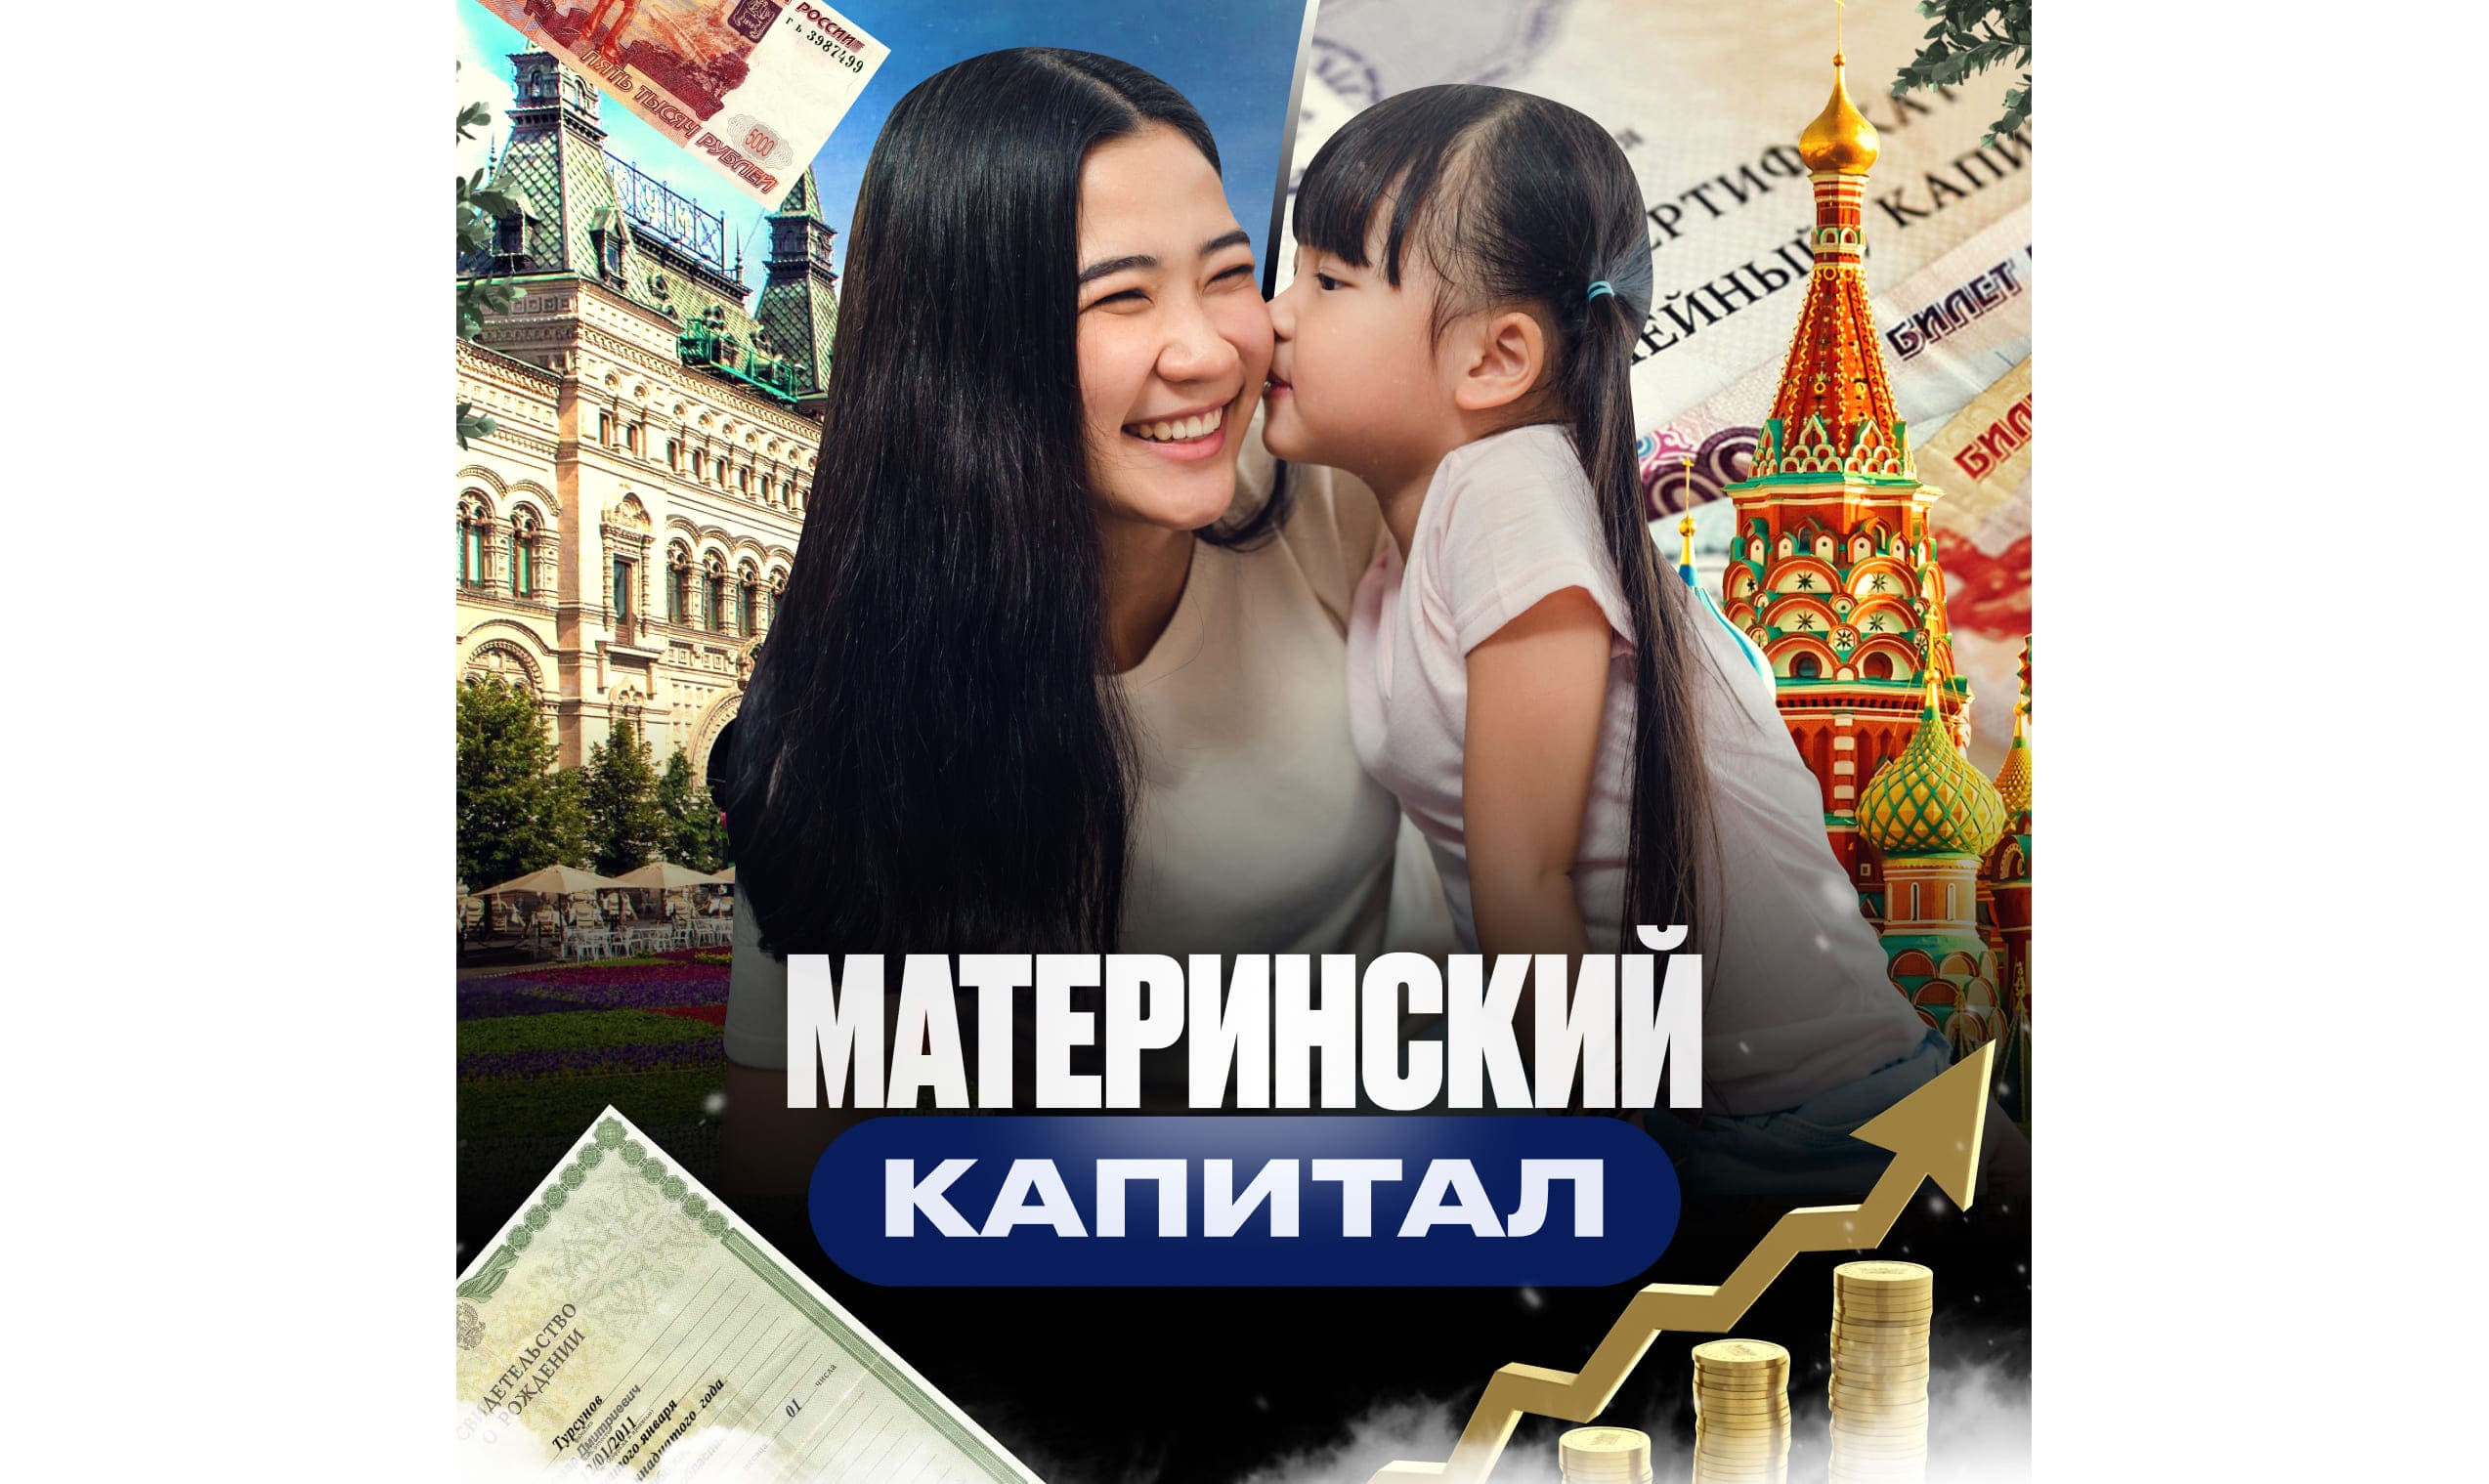 Материнский капитал в России